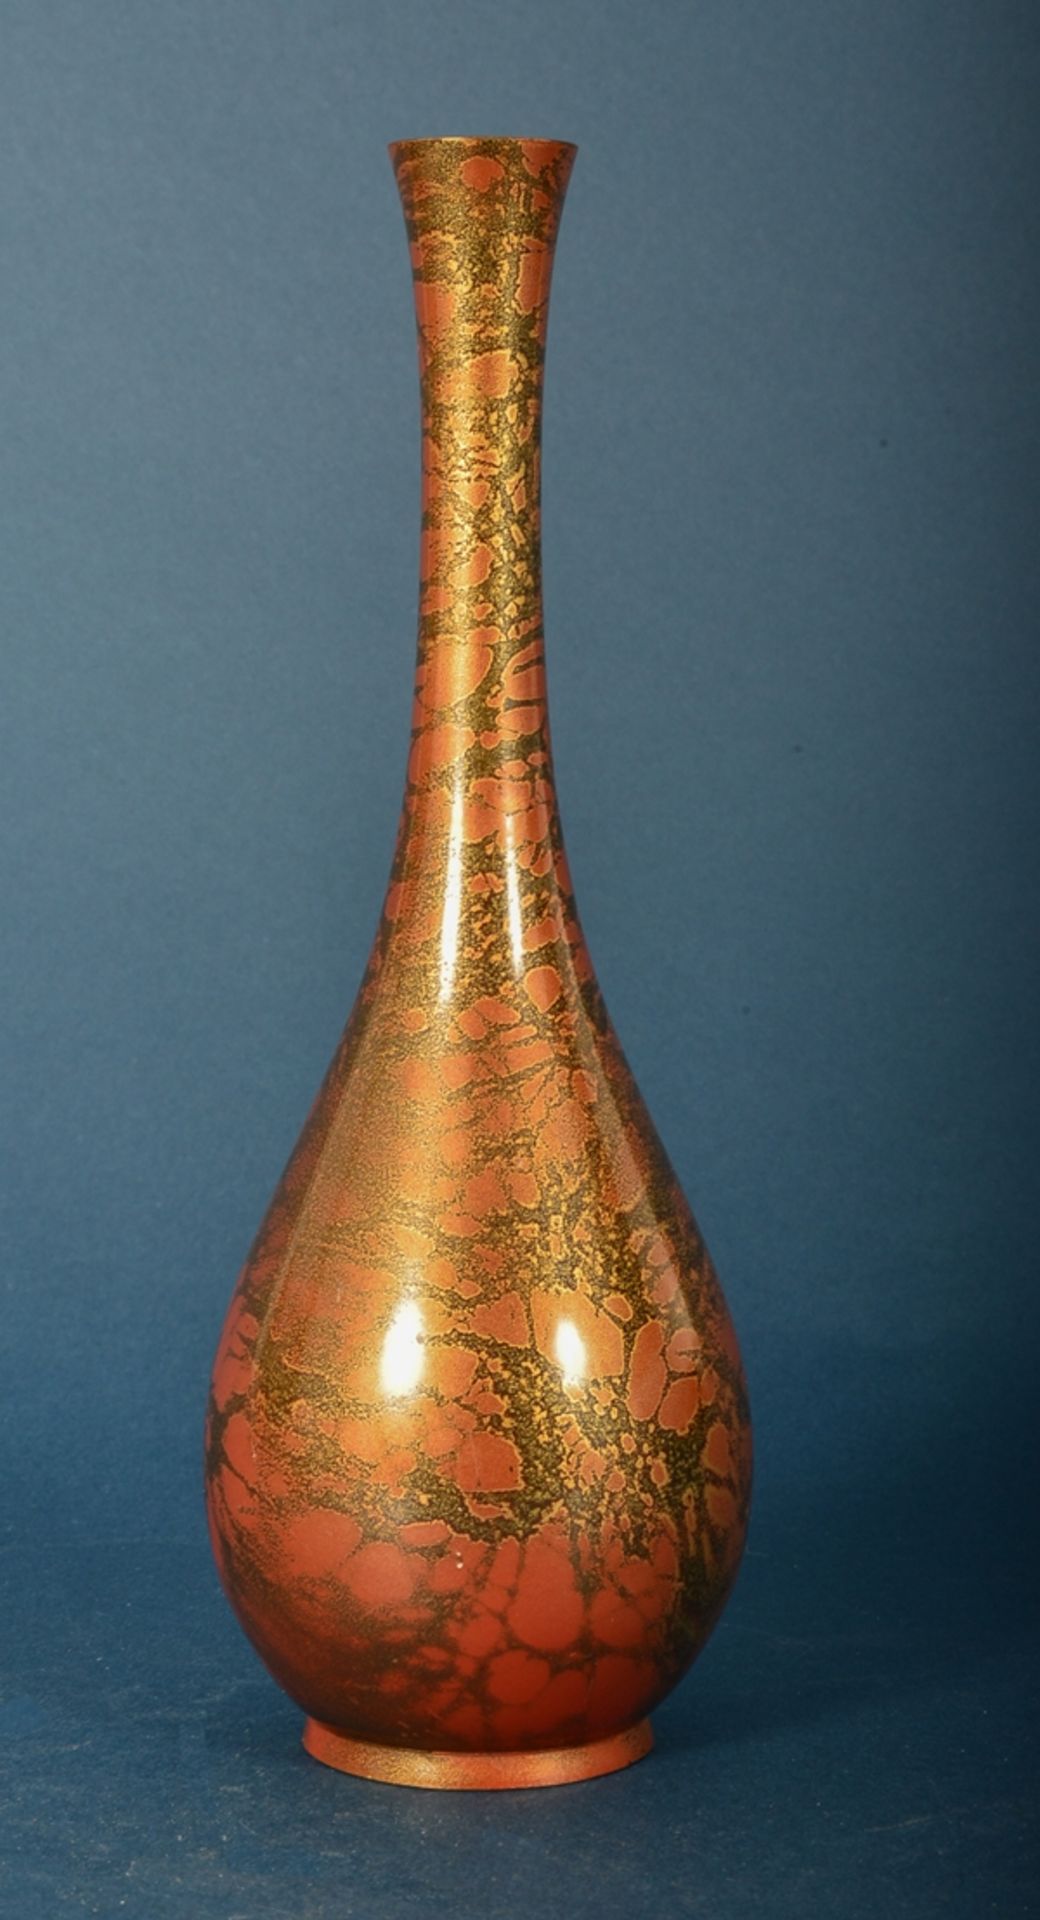 Feine Bronze Vase, Japan 20. Jhd., in Rot- und Goldtönen changierende Patina/Färbung auf schwarzem